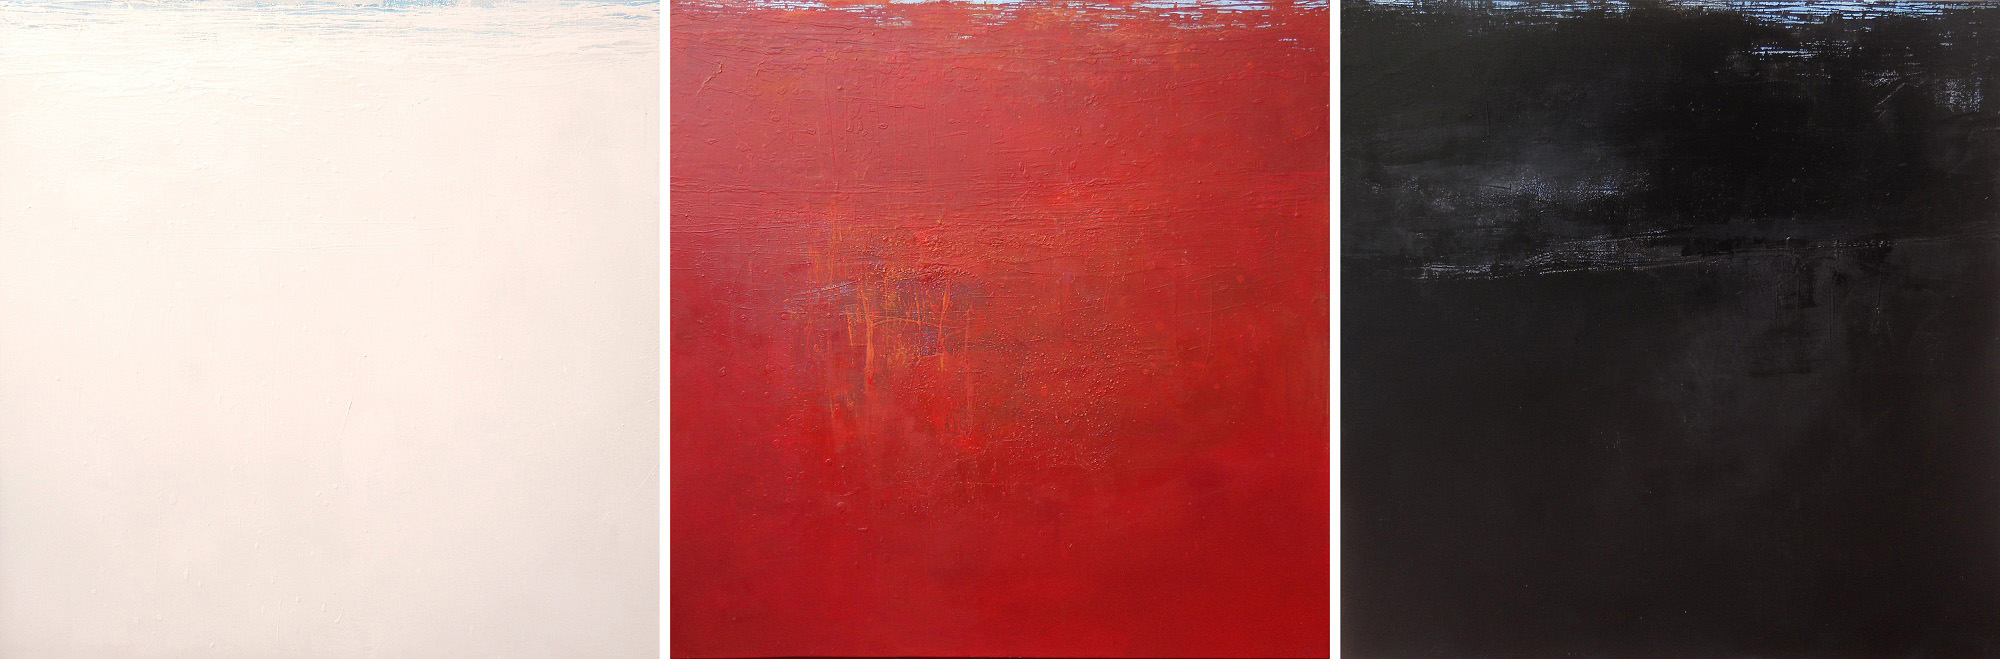 Anima e cuore la serie del paisaje abstracto de Sergio Aiello artista contemporaneo al sito sergioaiello.com